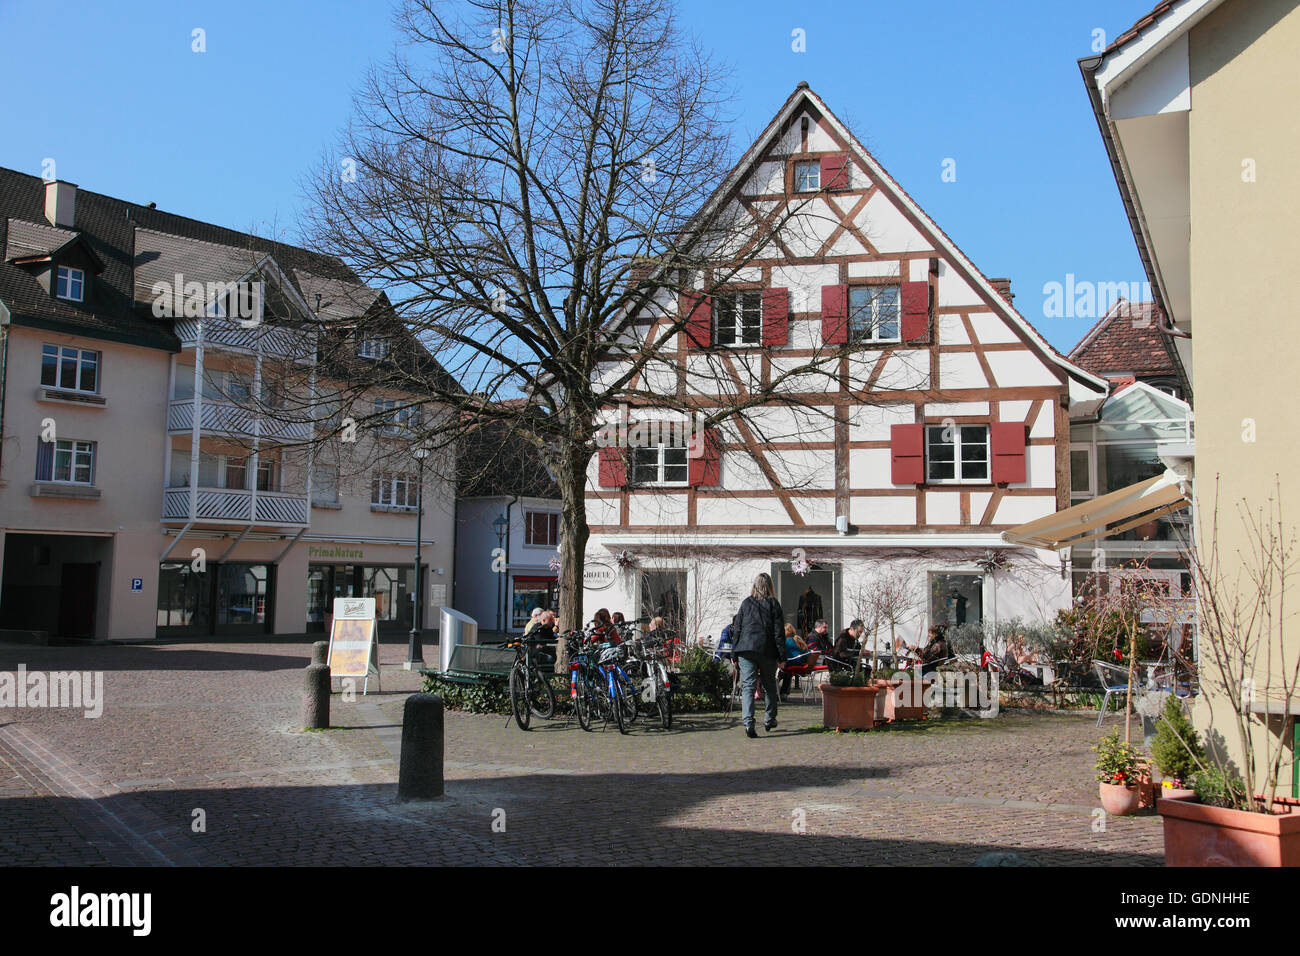 Das Zentrum von Arlesheim bei Basel Stockfotografie - Alamy